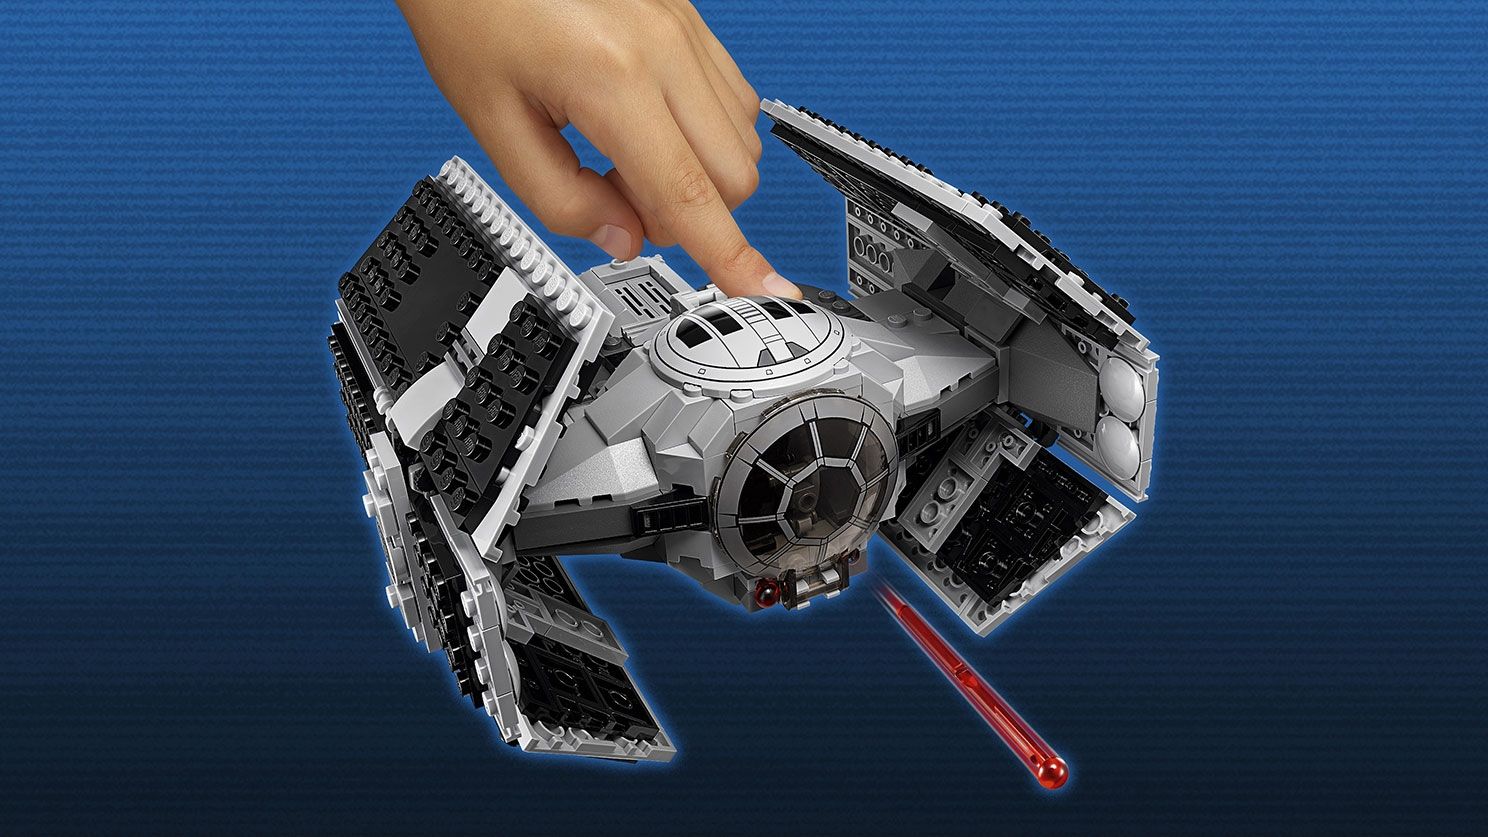 LEGO Star Wars 75150 Vader's TIE Advanced vs. A-Wing Starfighter LEGO_75150_WEB_SEC02_1488.jpg